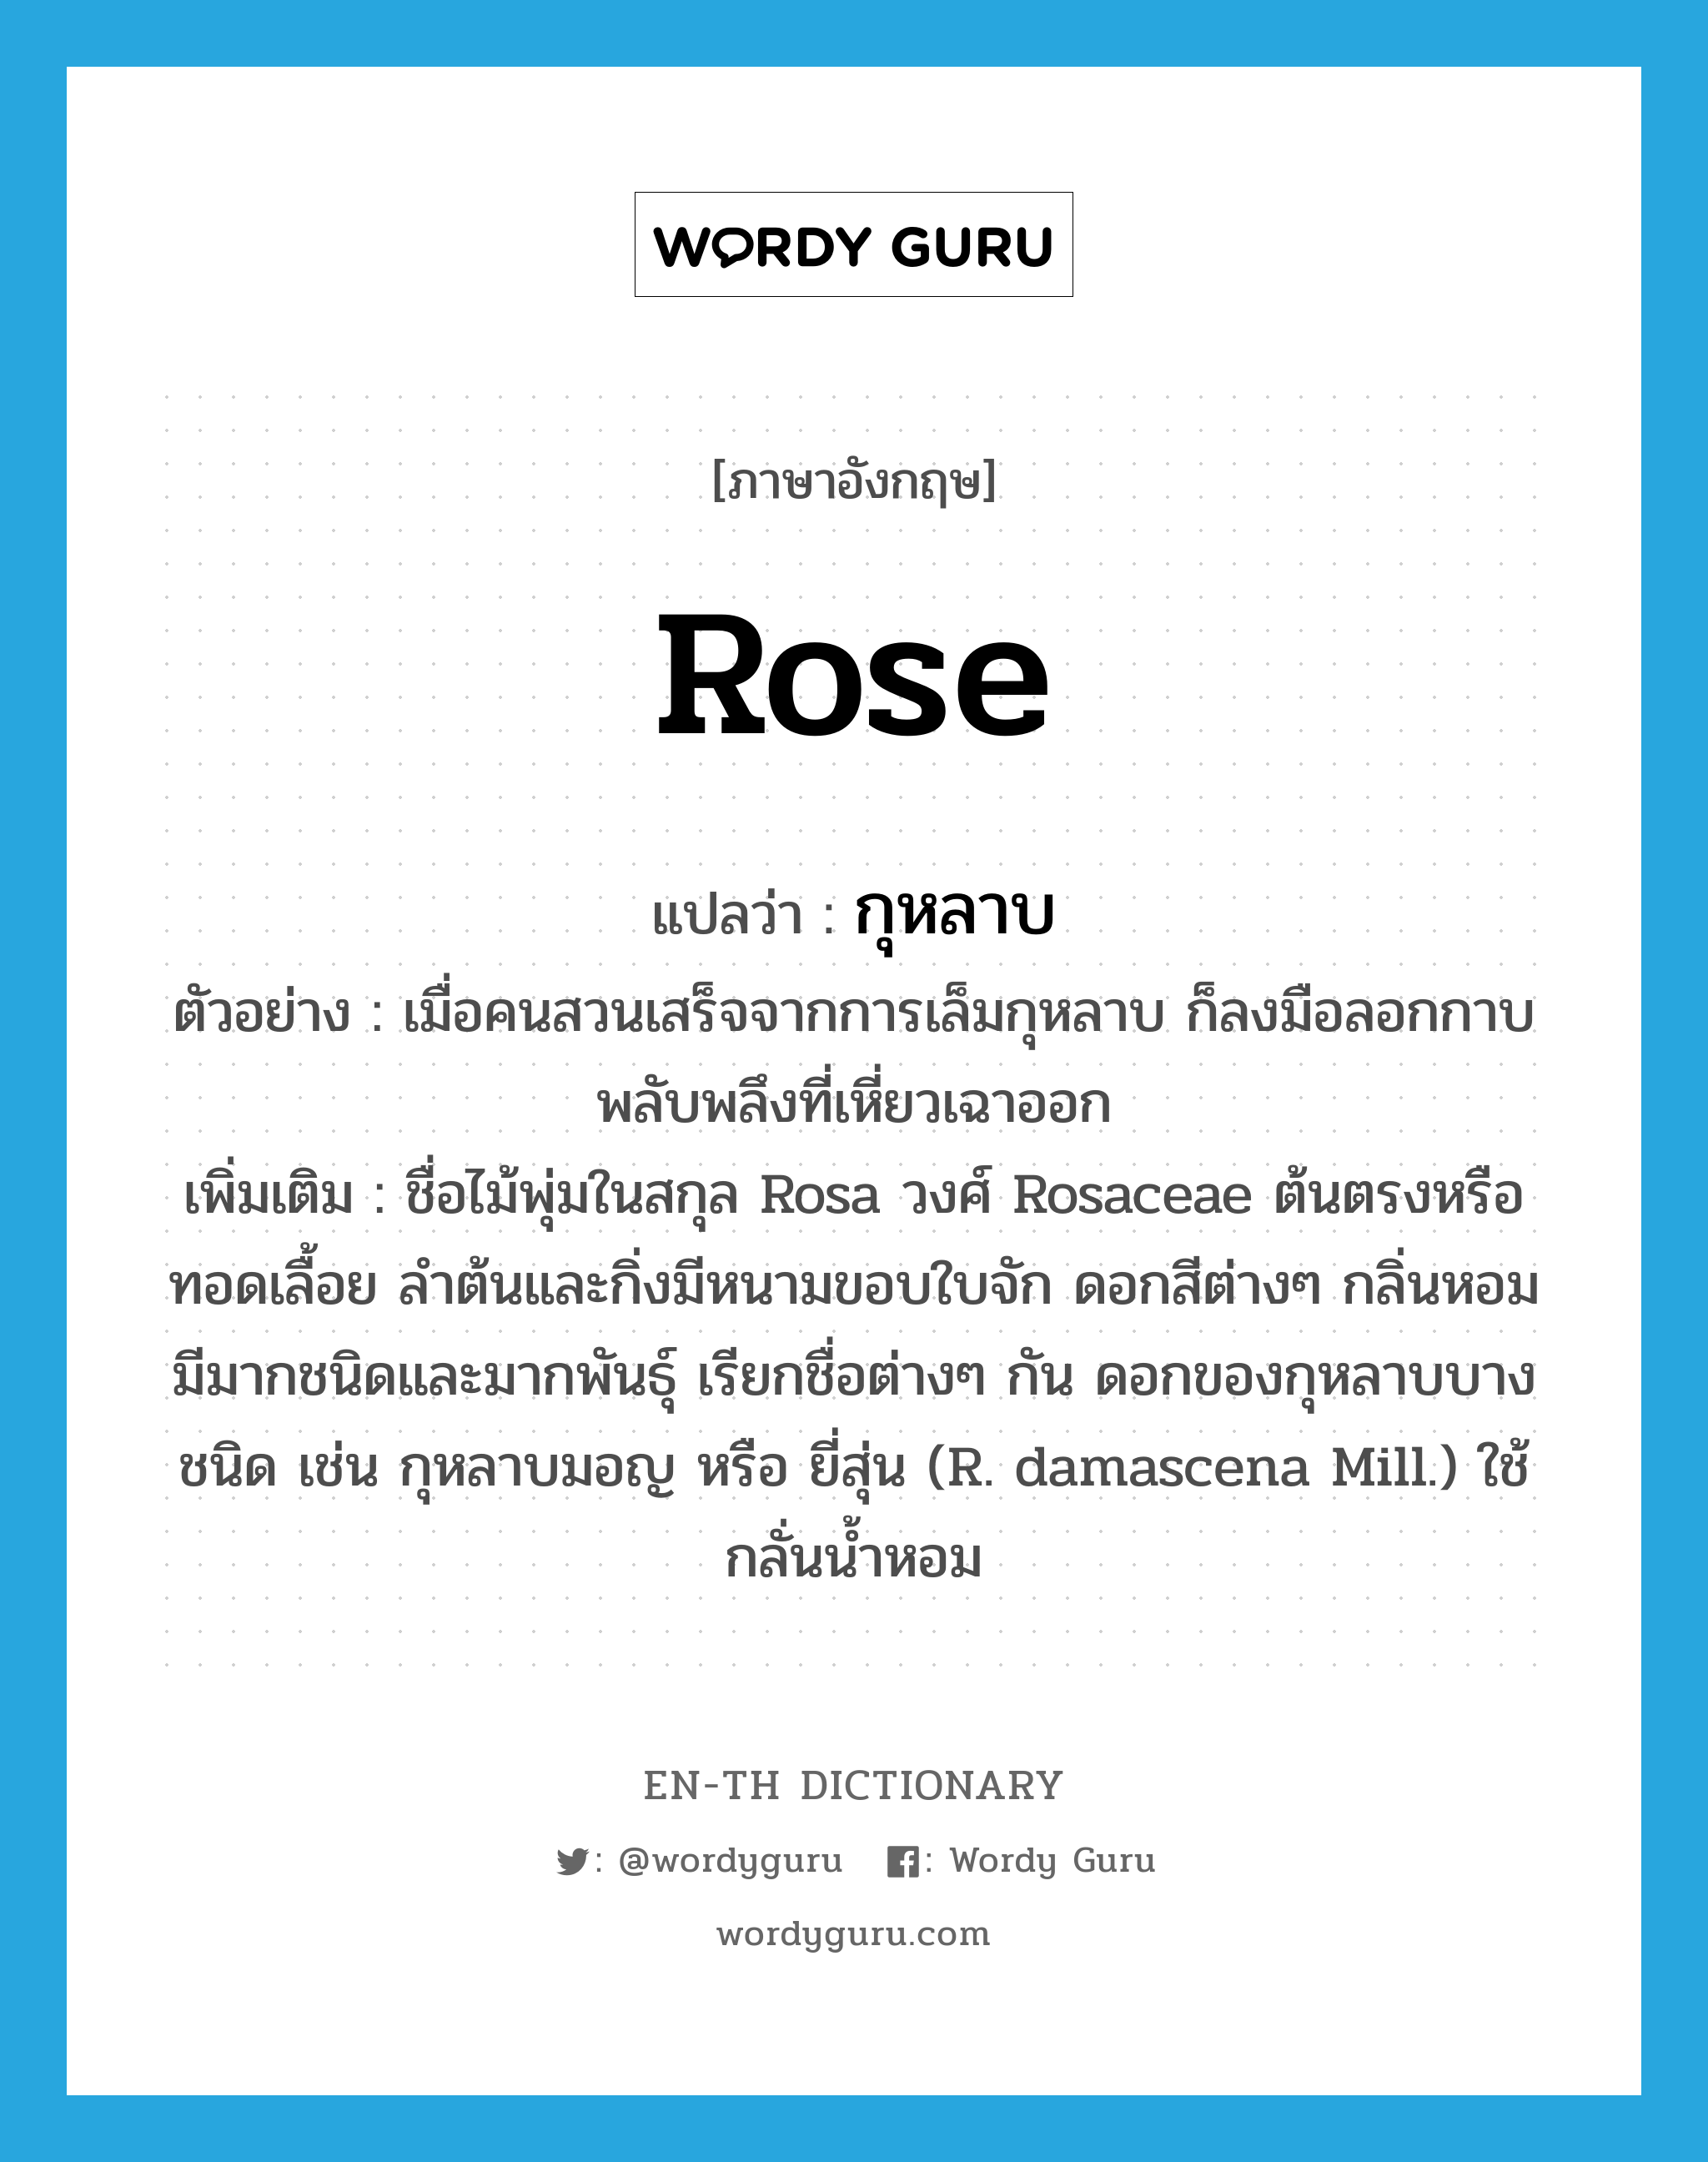 กุหลาบ ภาษาอังกฤษ?, คำศัพท์ภาษาอังกฤษ กุหลาบ แปลว่า rose ประเภท N ตัวอย่าง เมื่อคนสวนเสร็จจากการเล็มกุหลาบ ก็ลงมือลอกกาบพลับพลึงที่เหี่ยวเฉาออก เพิ่มเติม ชื่อไม้พุ่มในสกุล Rosa วงศ์ Rosaceae ต้นตรงหรือทอดเลื้อย ลำต้นและกิ่งมีหนามขอบใบจัก ดอกสีต่างๆ กลิ่นหอม มีมากชนิดและมากพันธุ์ เรียกชื่อต่างๆ กัน ดอกของกุหลาบบางชนิด เช่น กุหลาบมอญ หรือ ยี่สุ่น (R. damascena Mill.) ใช้กลั่นน้ำหอม หมวด N